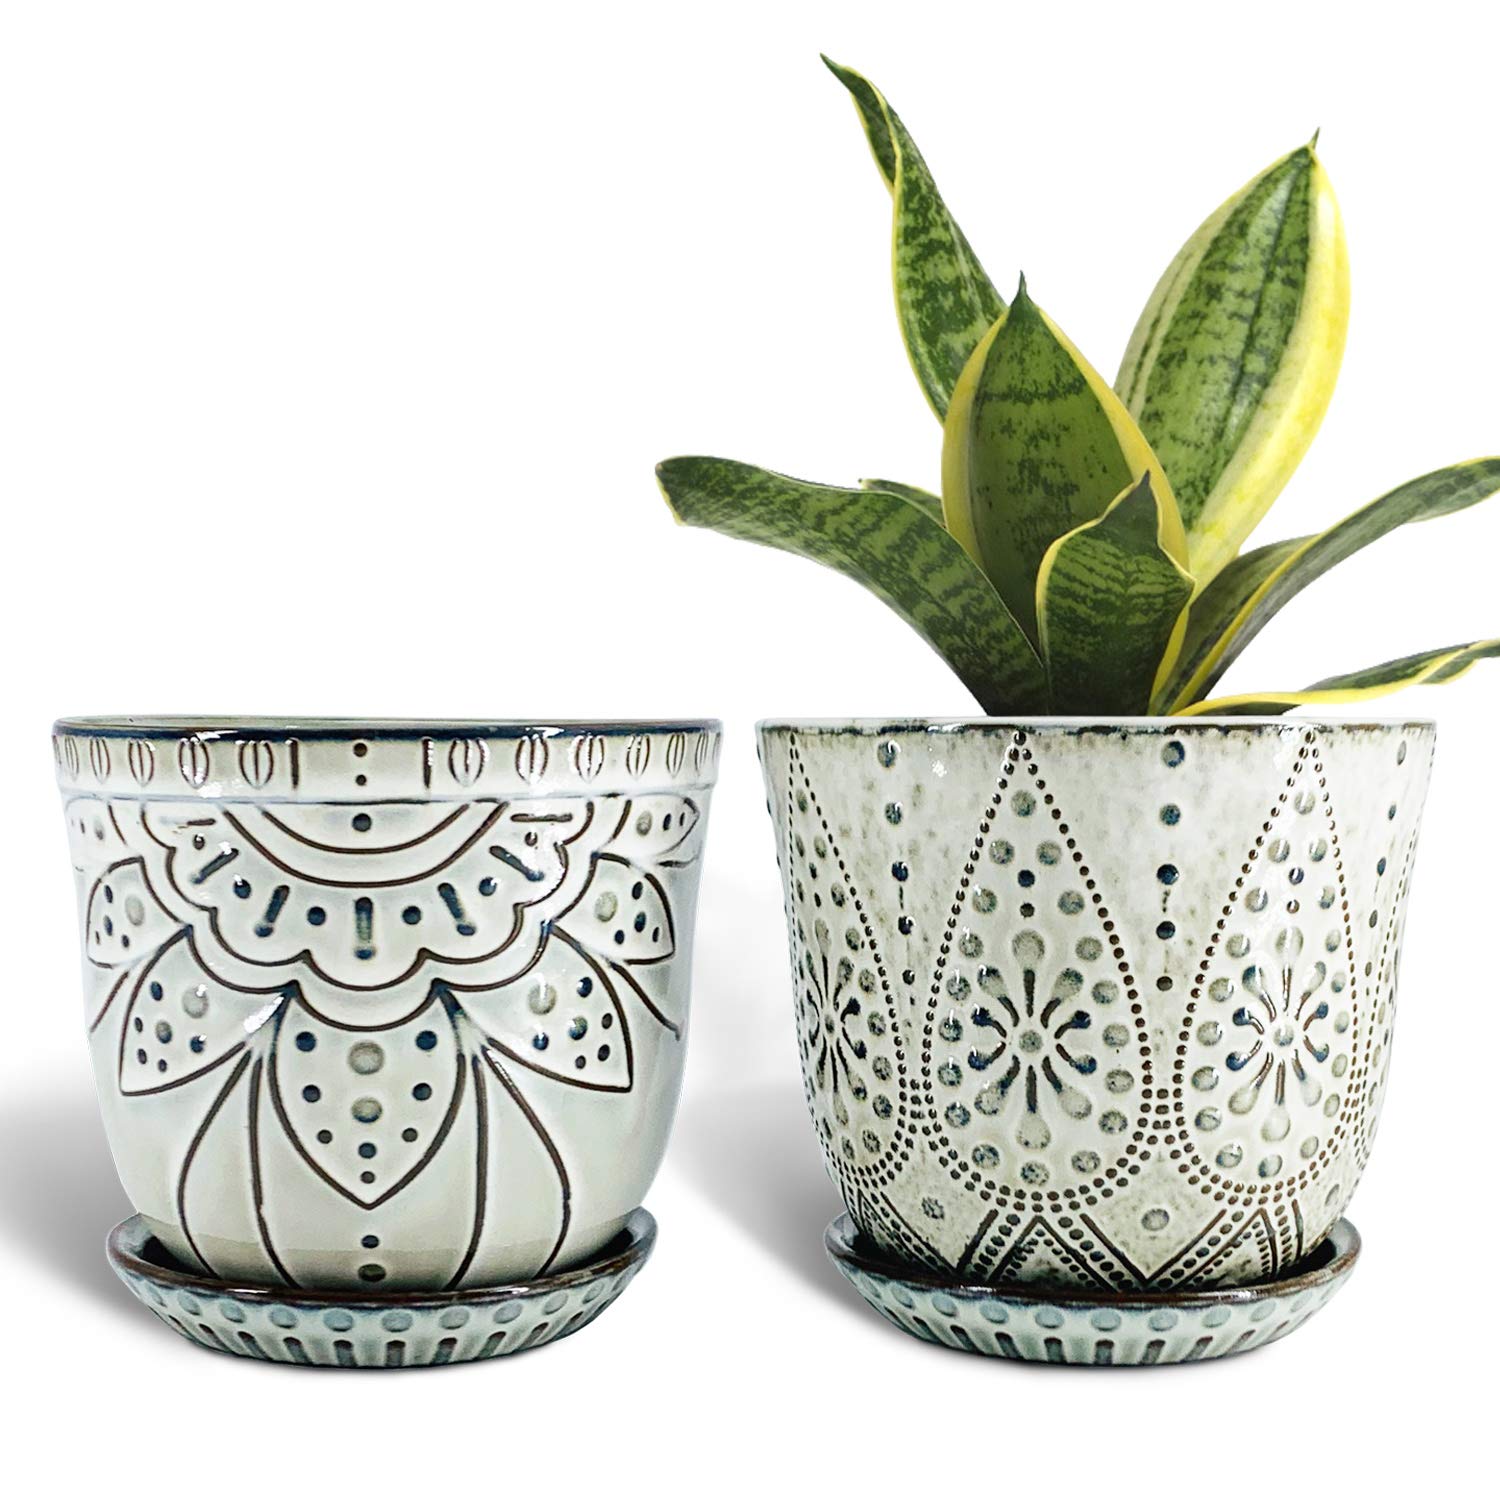 Gepege Ceramic Orchid Pot Set